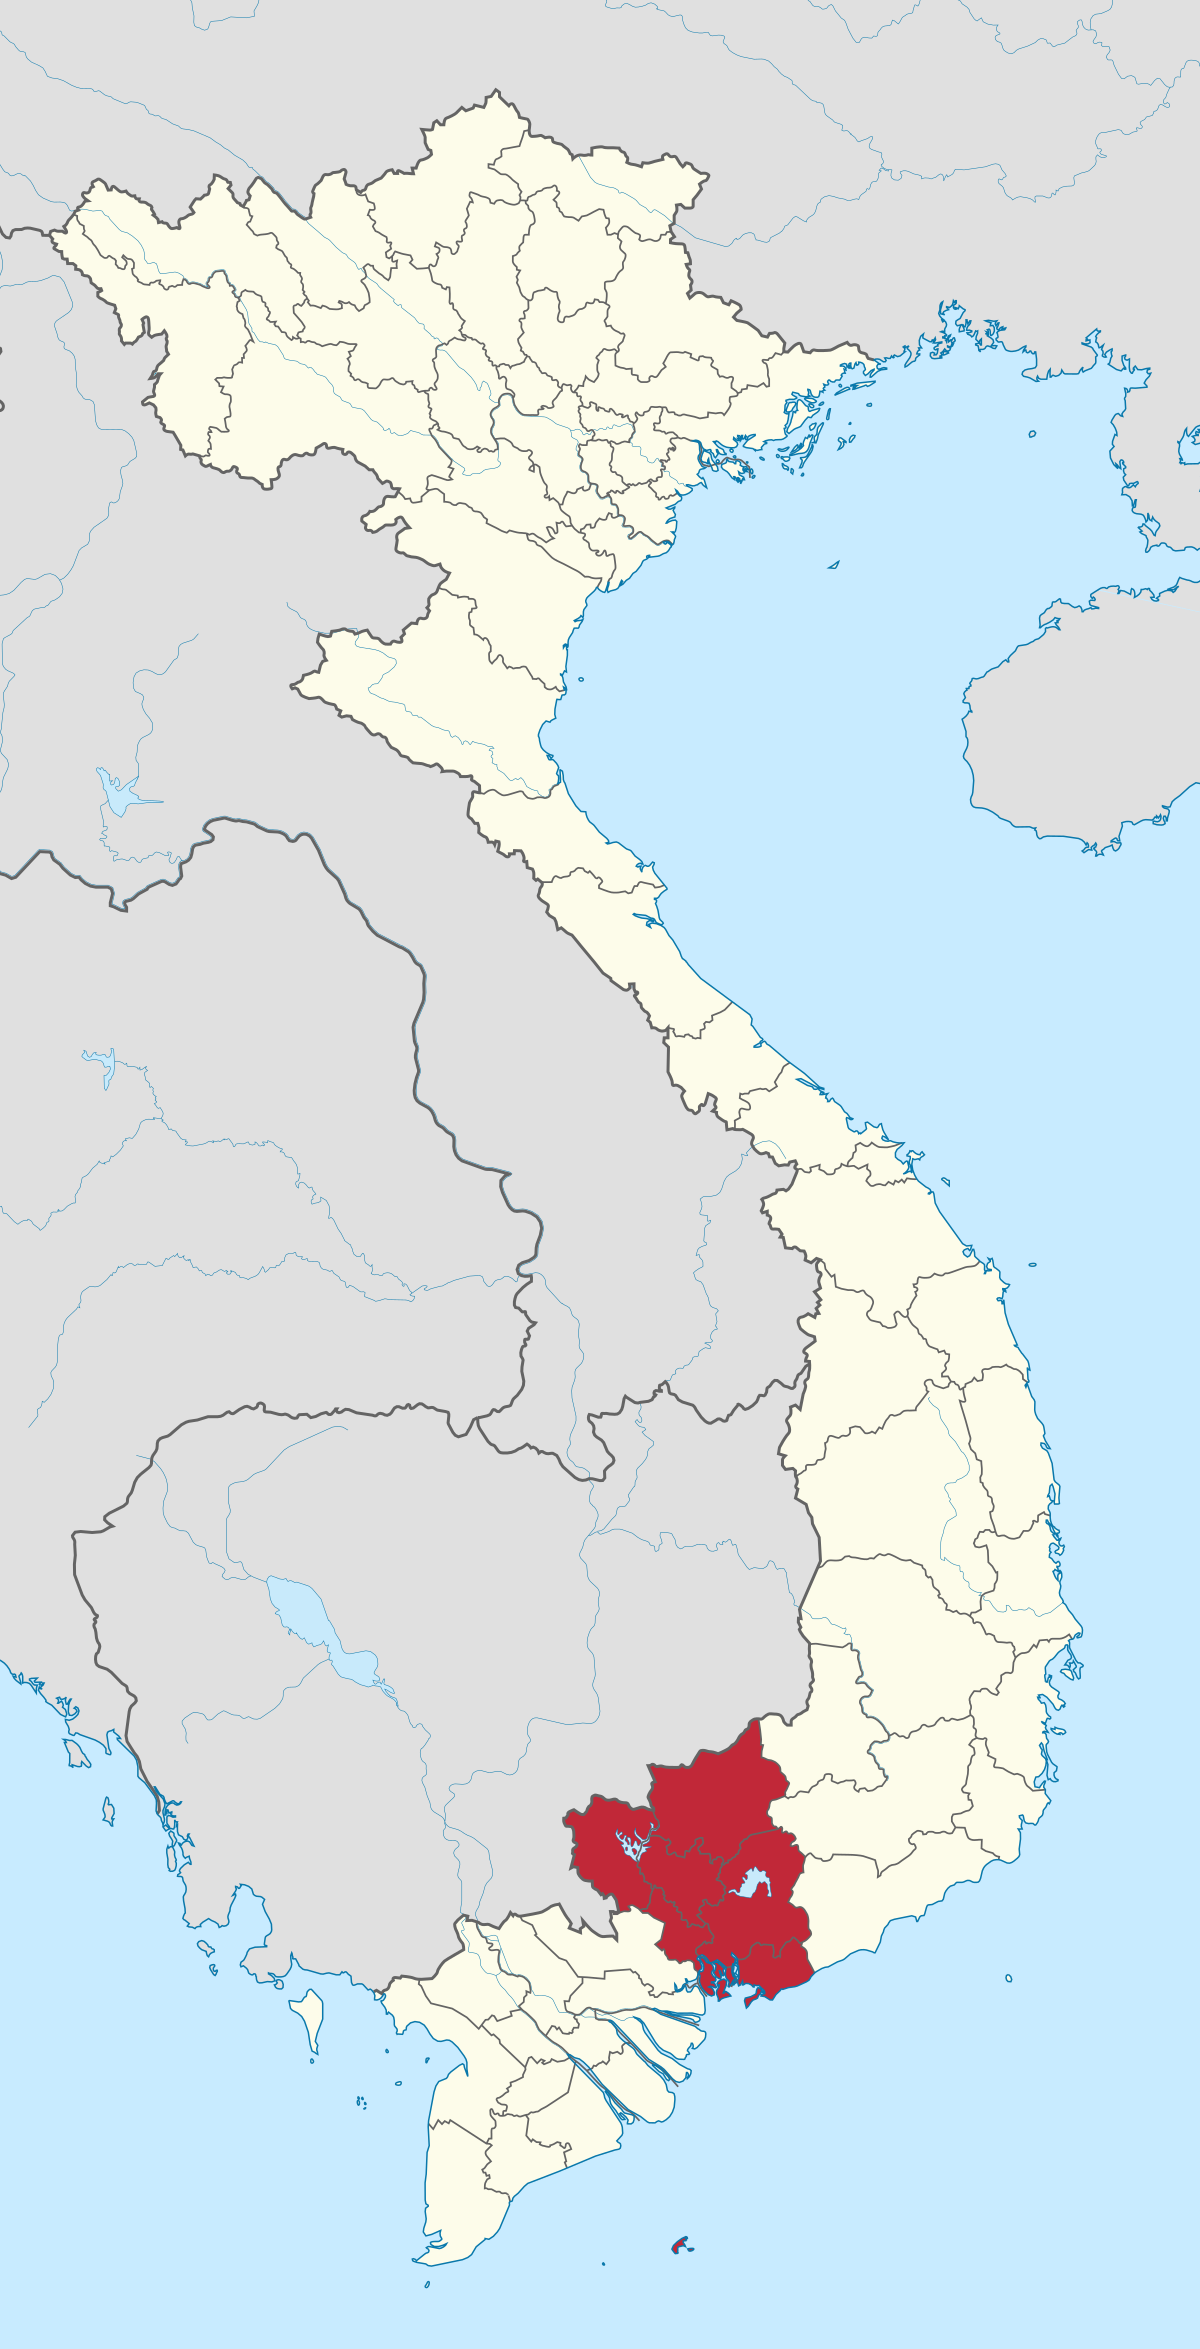 Bình Thuận có địa lý độc đáo, nằm giữa vùng Tân Sơn Nhất và sân bay Cam Ranh. Với bờ biển dài và những đồi cát nổi tiếng, đây là điểm đến không thể bỏ qua trong hành trình khám phá miền Trung Việt Nam.